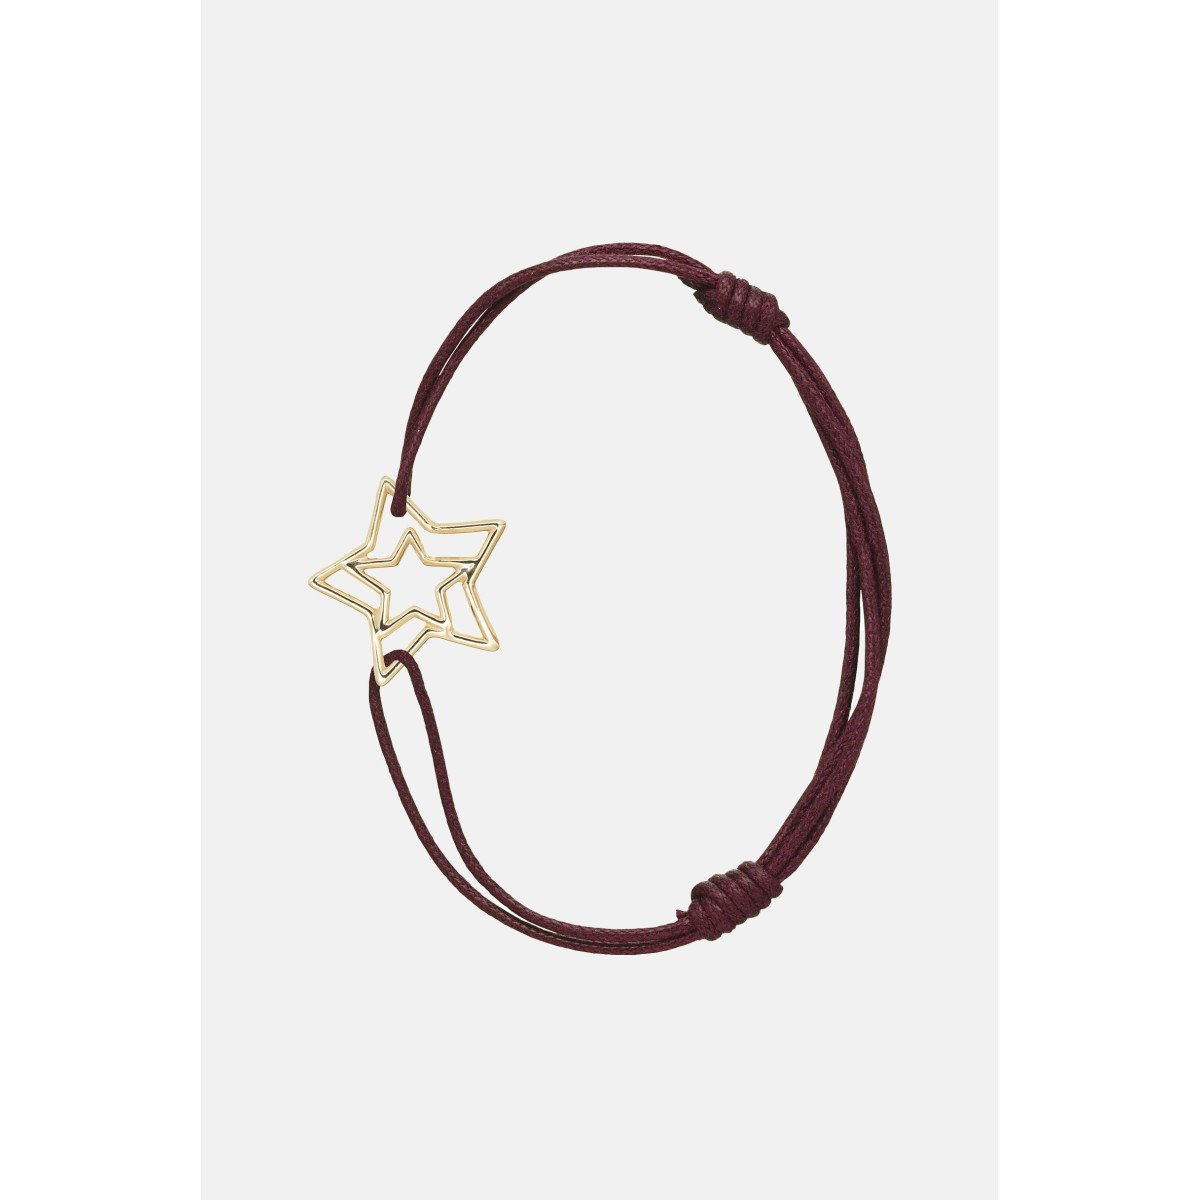 Estrella Pura Aliita bracelet